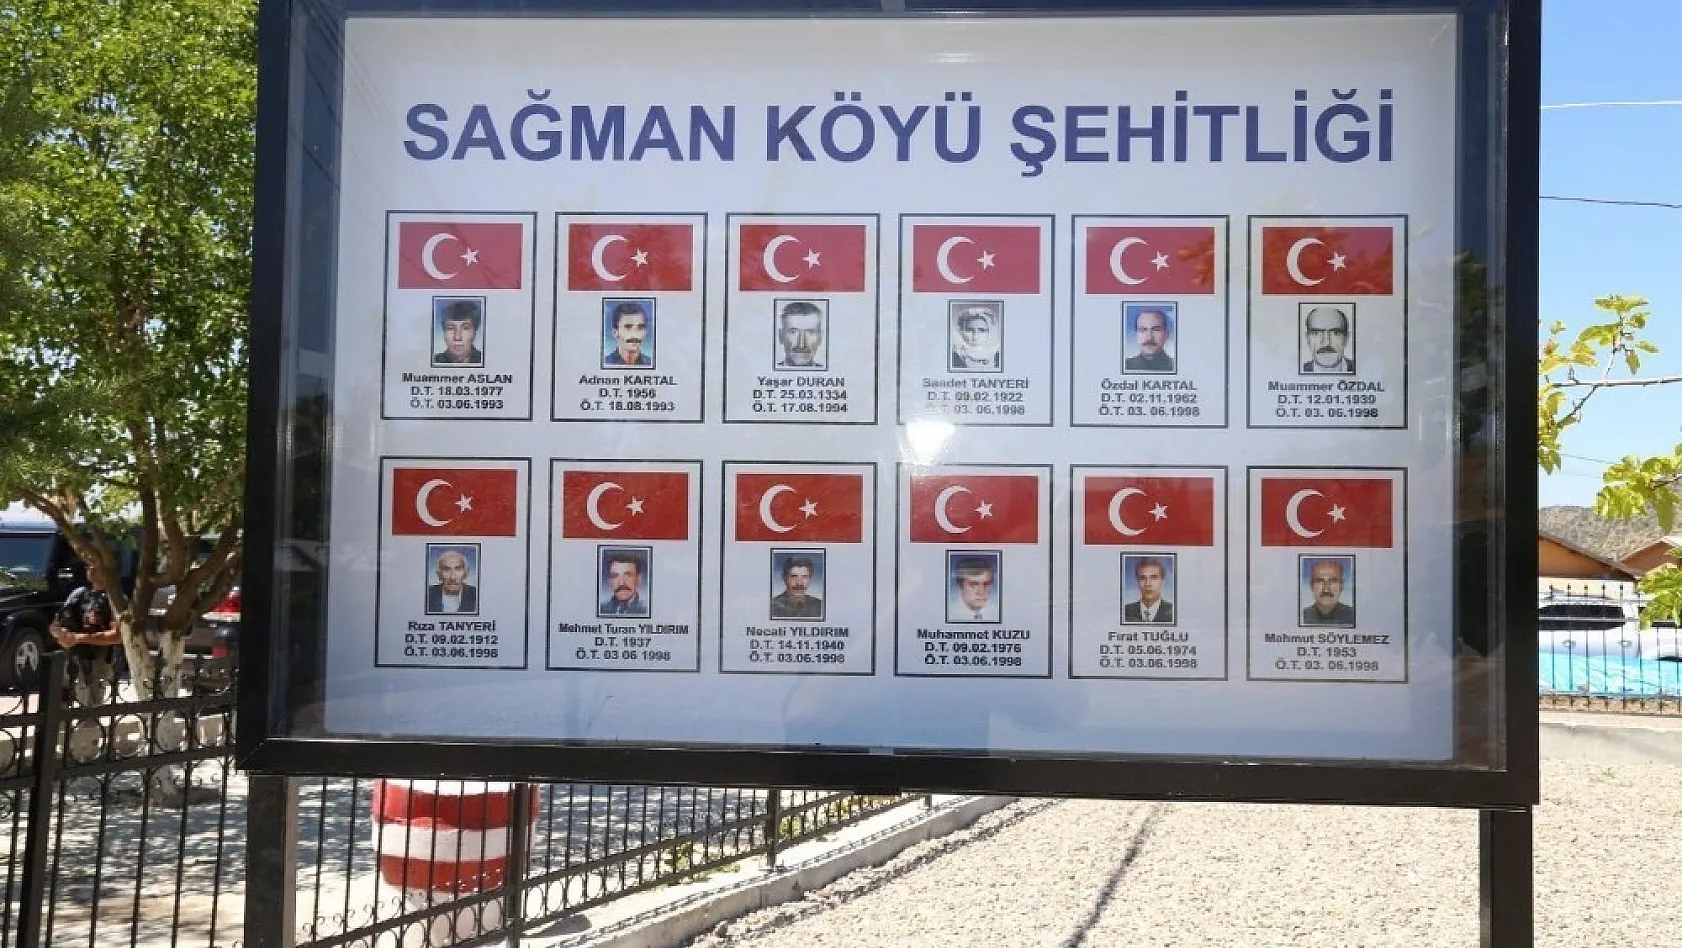 Tunceli'de 12 sivil şehit için yapılan anıt açıldı 